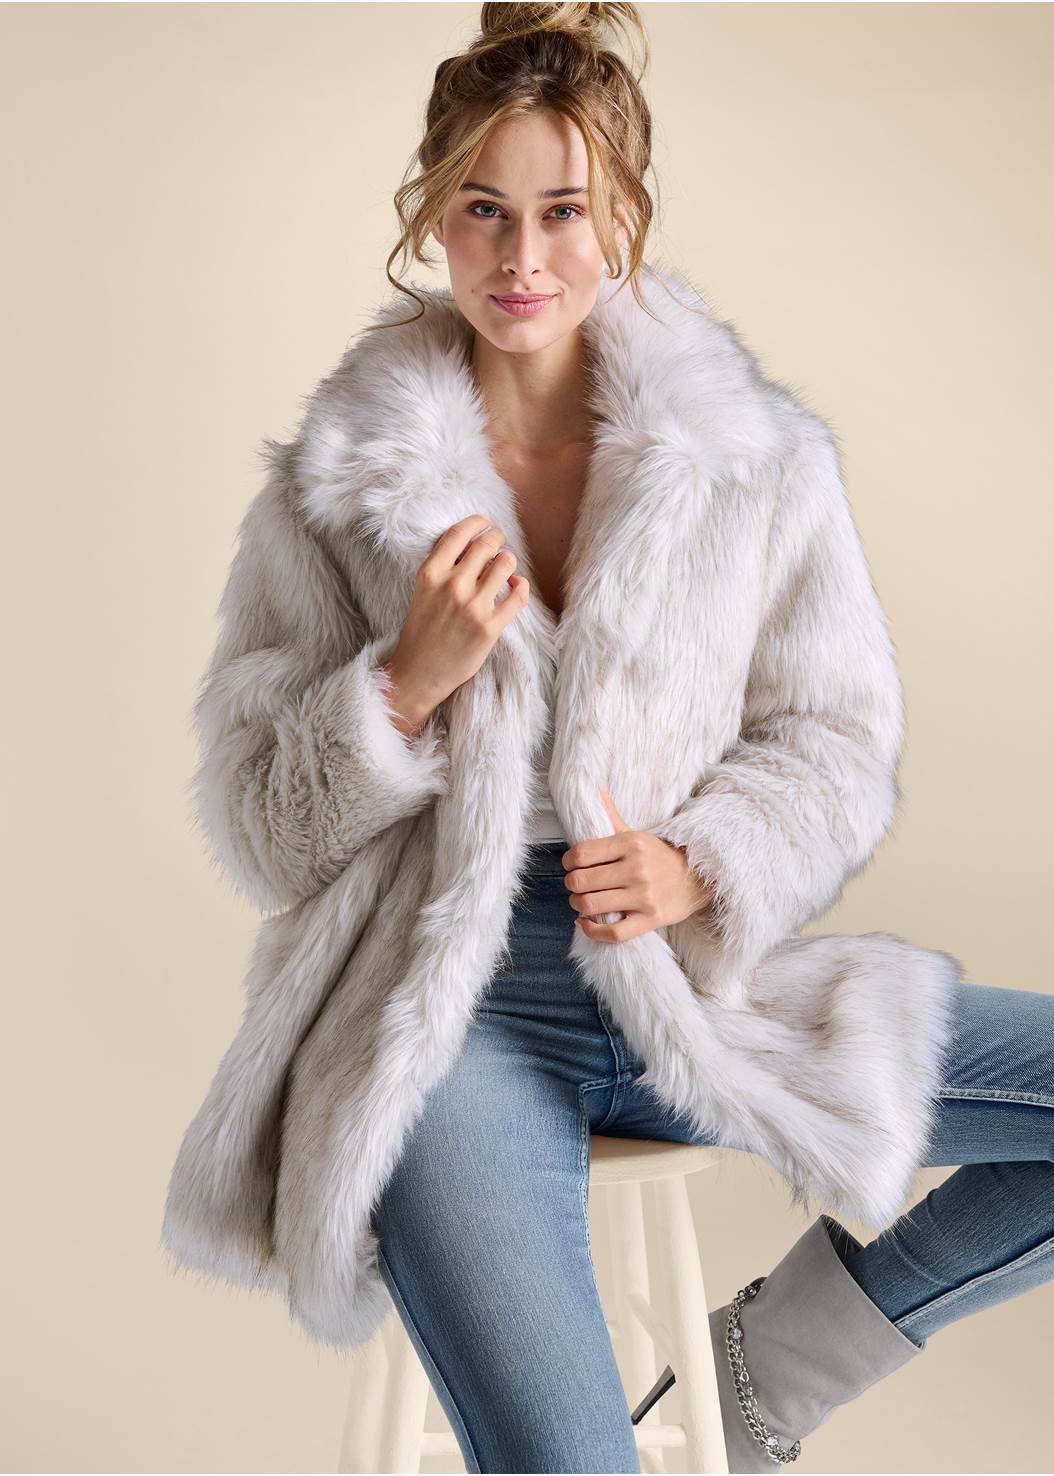 Women's Faux-Fur Trim Coat - Whisper White, Size 6 by Venus